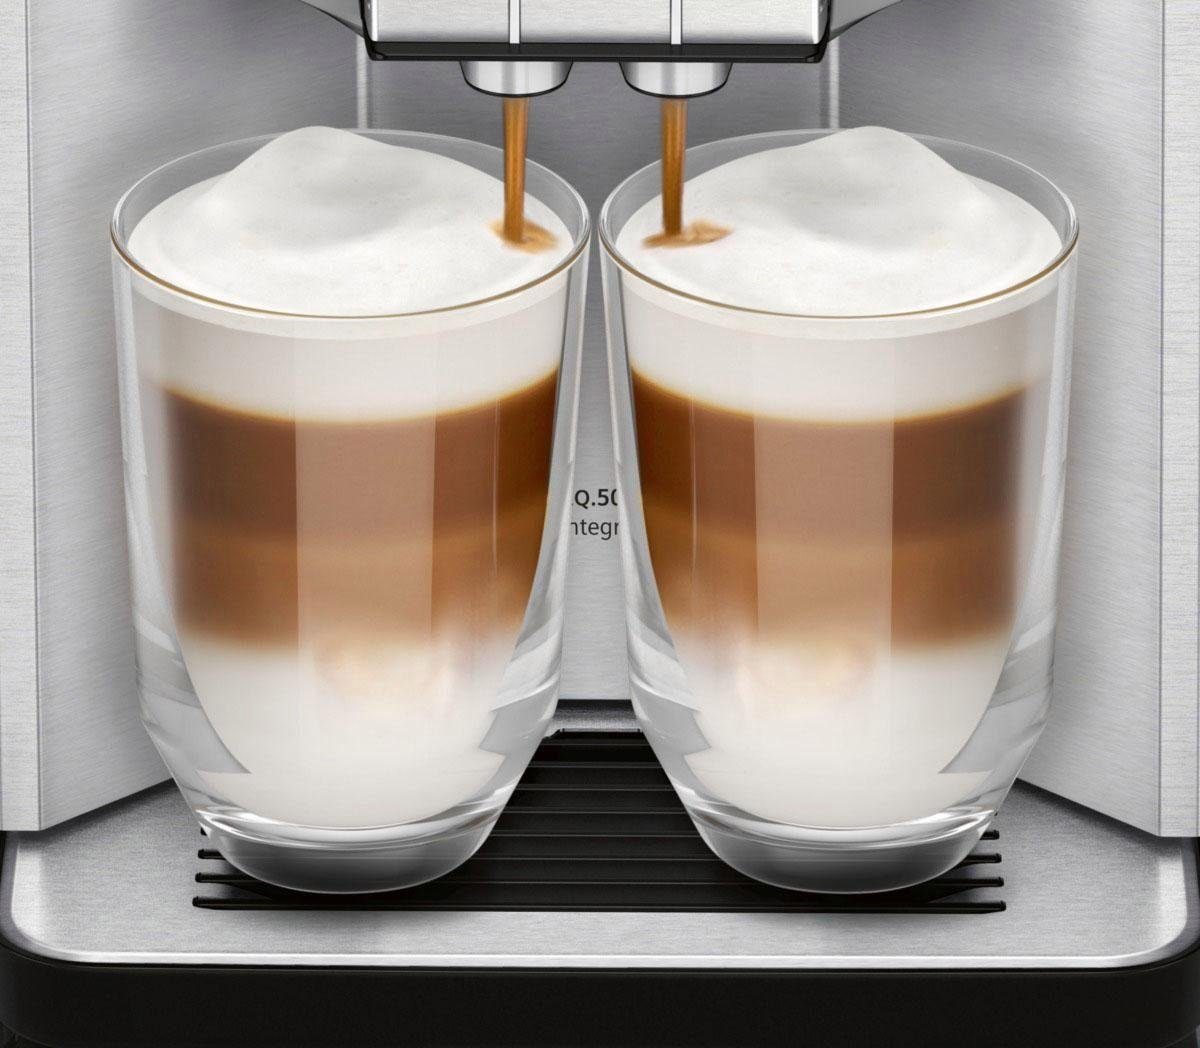 einfache Bedienung, integral gleichzeitig EQ.500 2 SIEMENS Kaffeevollautomat integrierter Milchbehälter, Tassen TQ507D02,